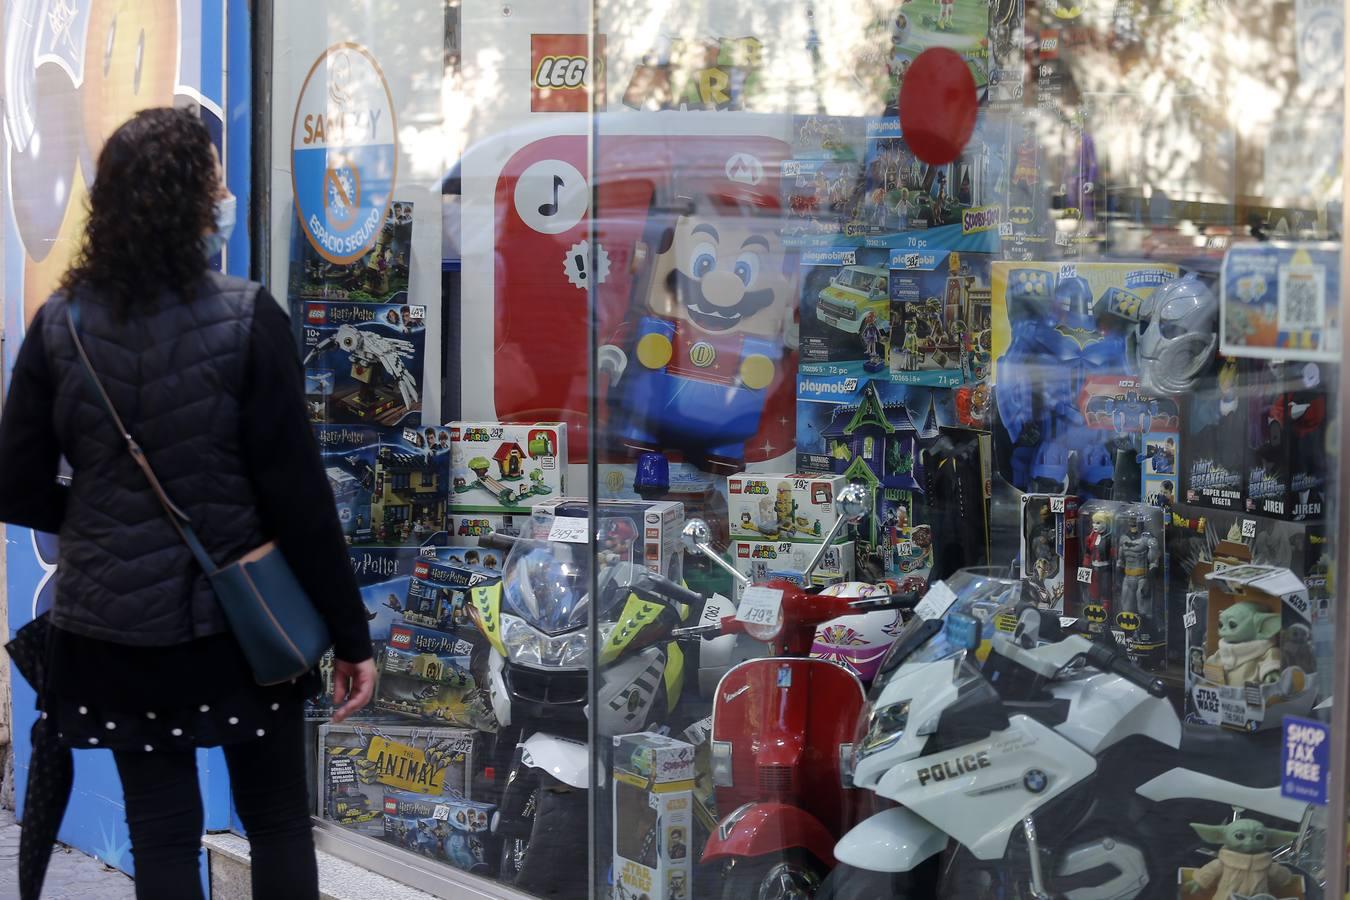 En imágenes: las jugueterías de Sevilla, abiertas hasta las 20.00